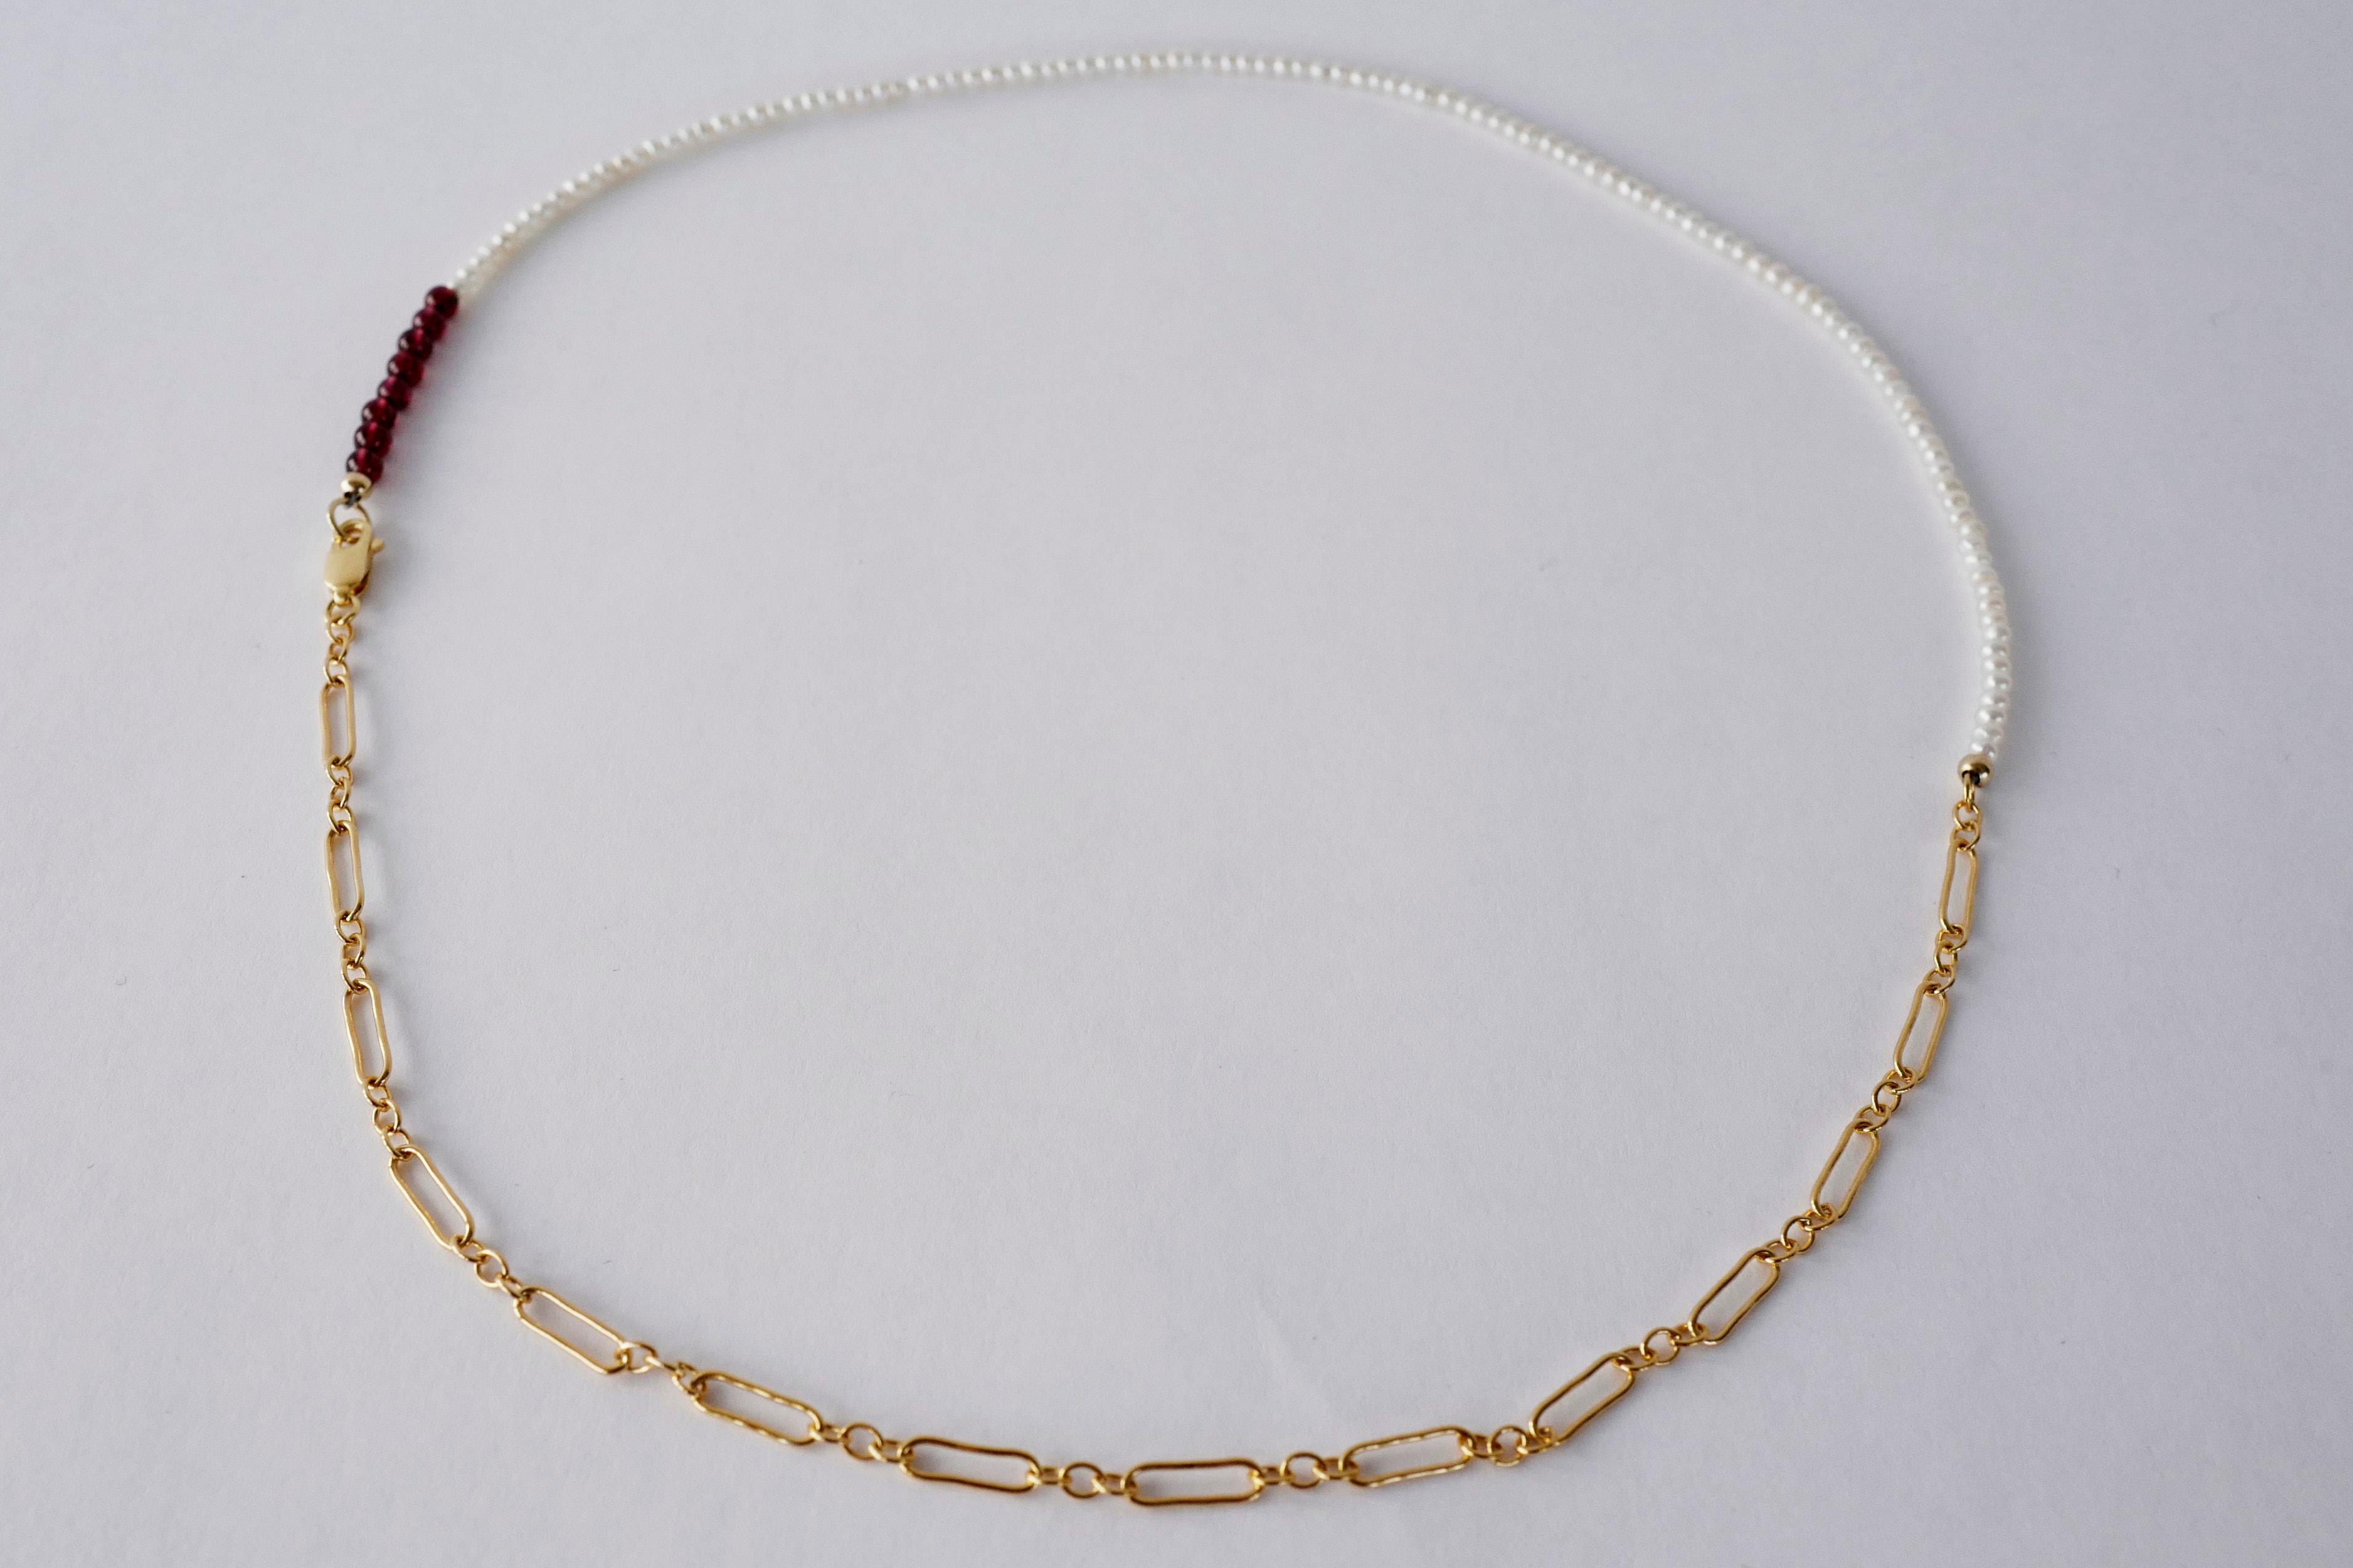 Choker-Perlenkette in Weiß, weiße Perle, roter Granat, Gold, gefüllte Kette, 20